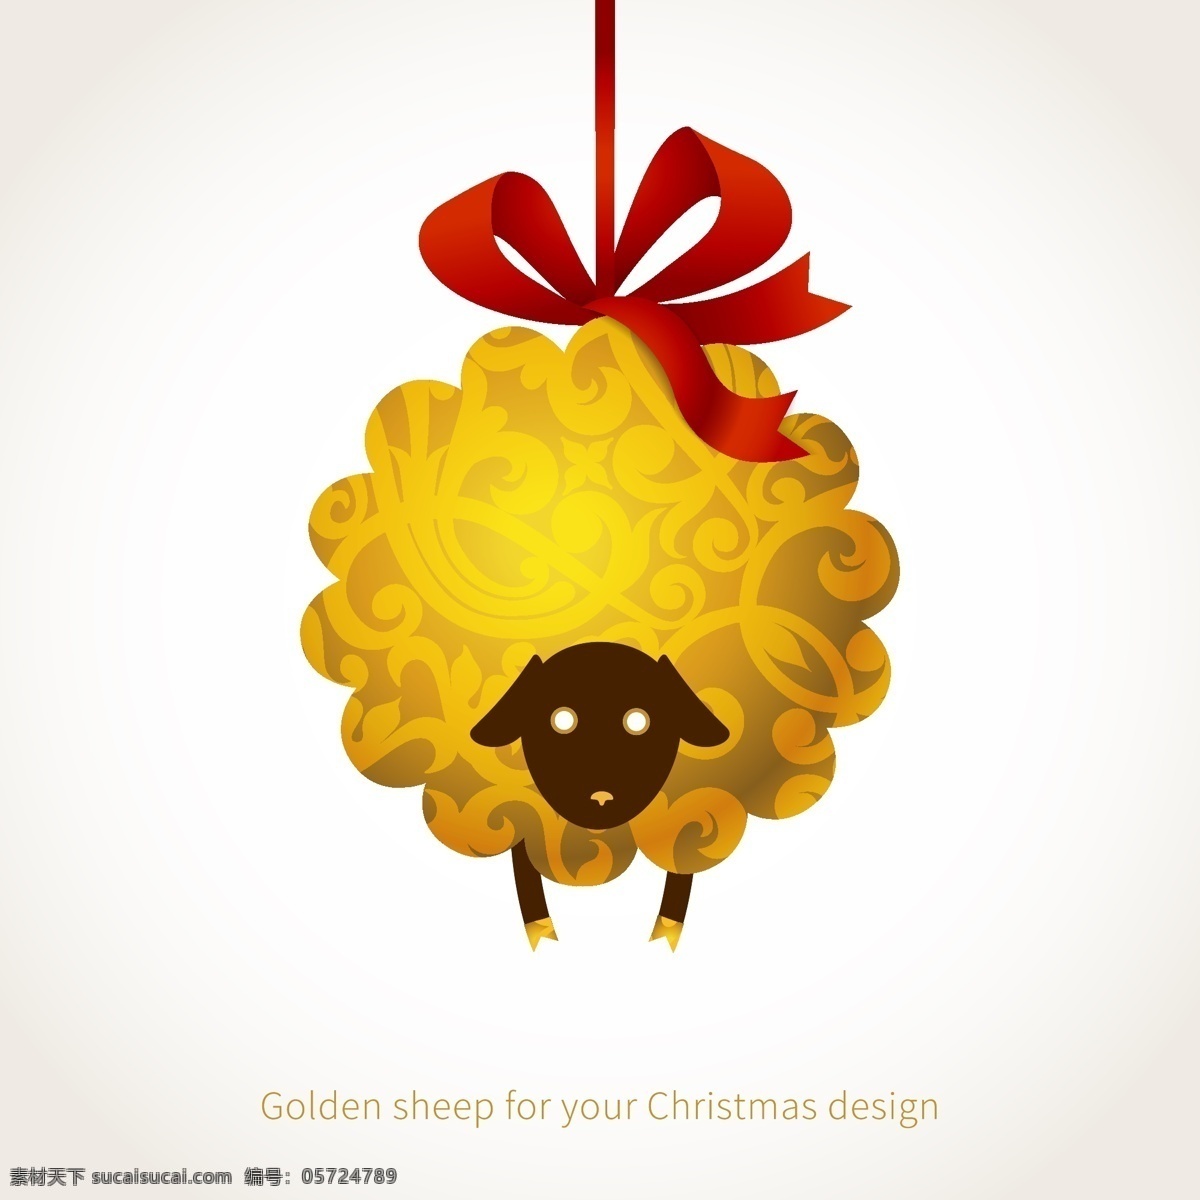 卡通 幽默 金色 绵羊 背景 蝴蝶结 花纹 圣诞节 矢量图 新年快乐 羊年 绵羊吊球 其他矢量图